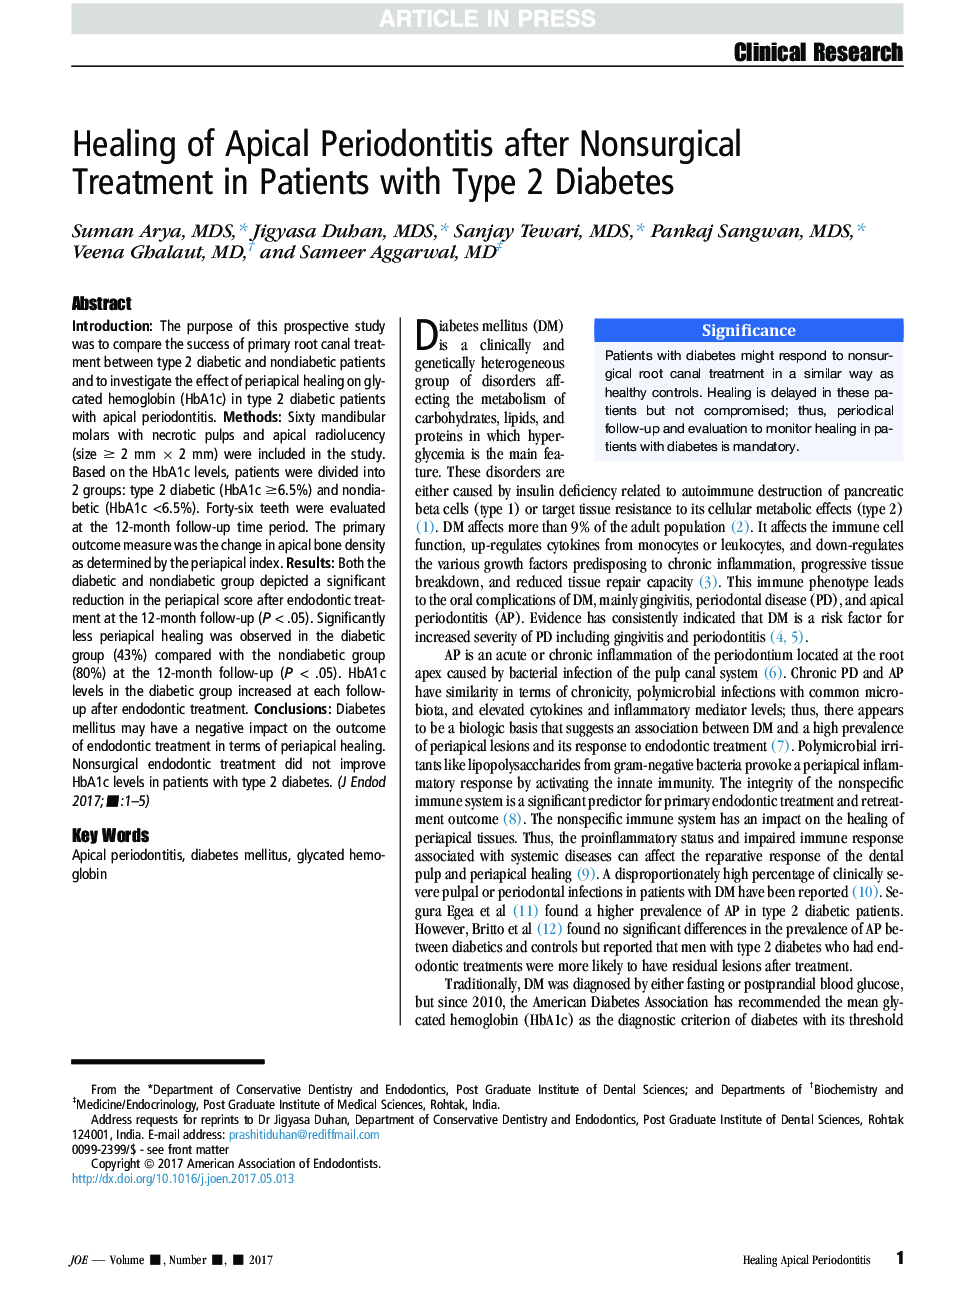 درمان پریودنتیت آپیکال پس از درمان غیر جراحی در بیماران مبتلا به دیابت نوع 2 